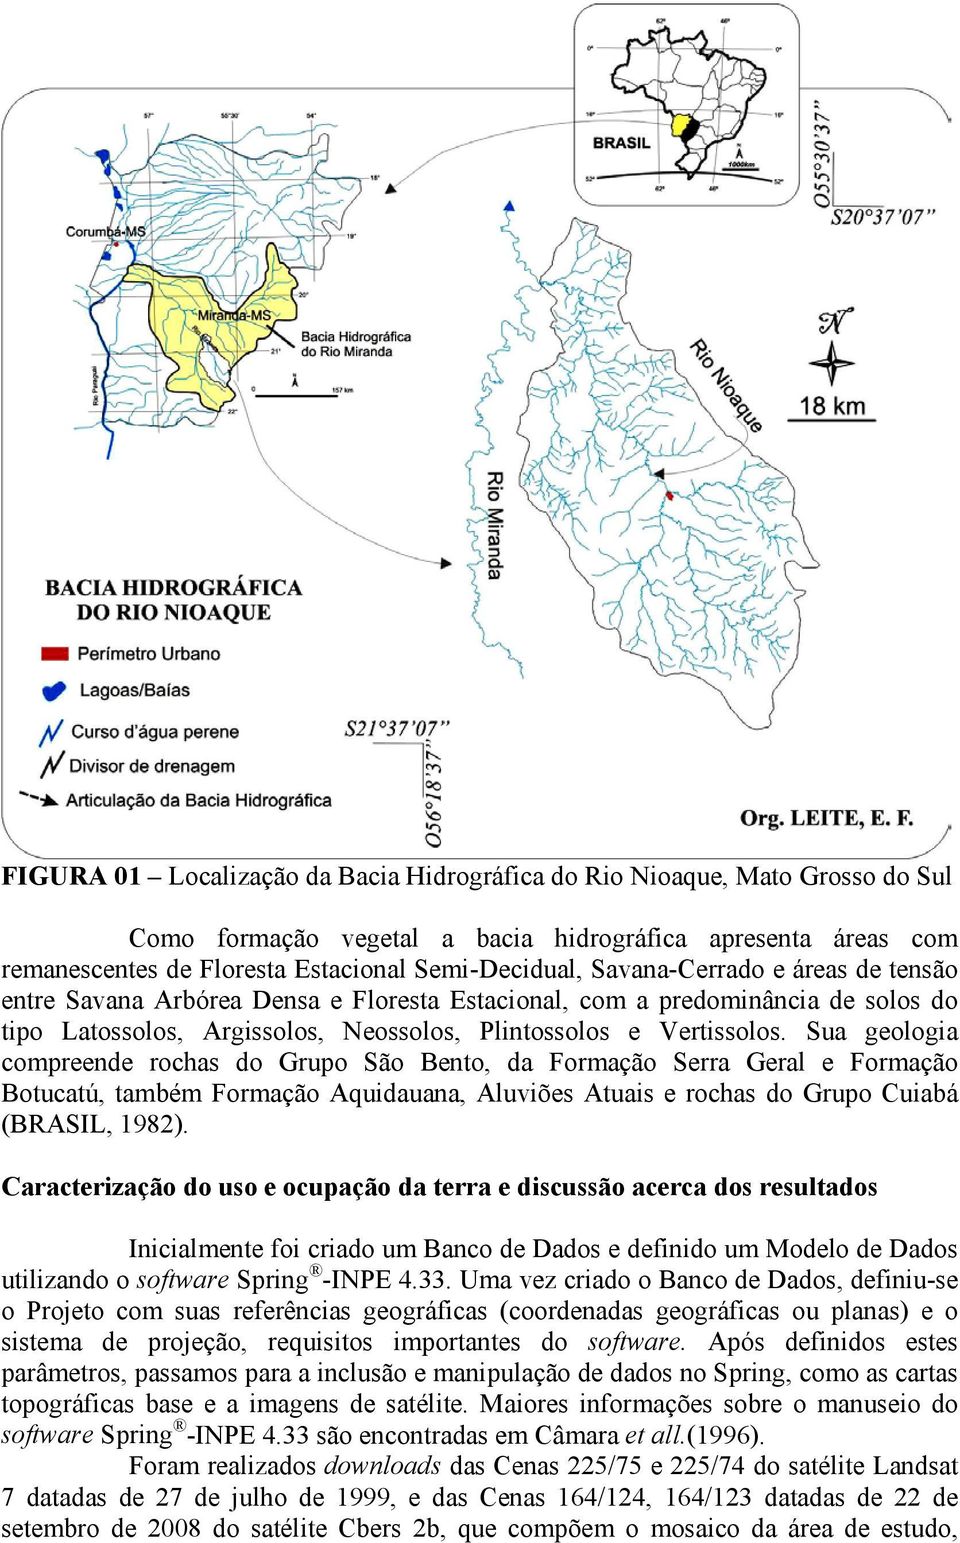 Sua geologia compreende rochas do Grupo São Bento, da Formação Serra Geral e Formação Botucatú, também Formação Aquidauana, Aluviões Atuais e rochas do Grupo Cuiabá (BRASIL, 1982).